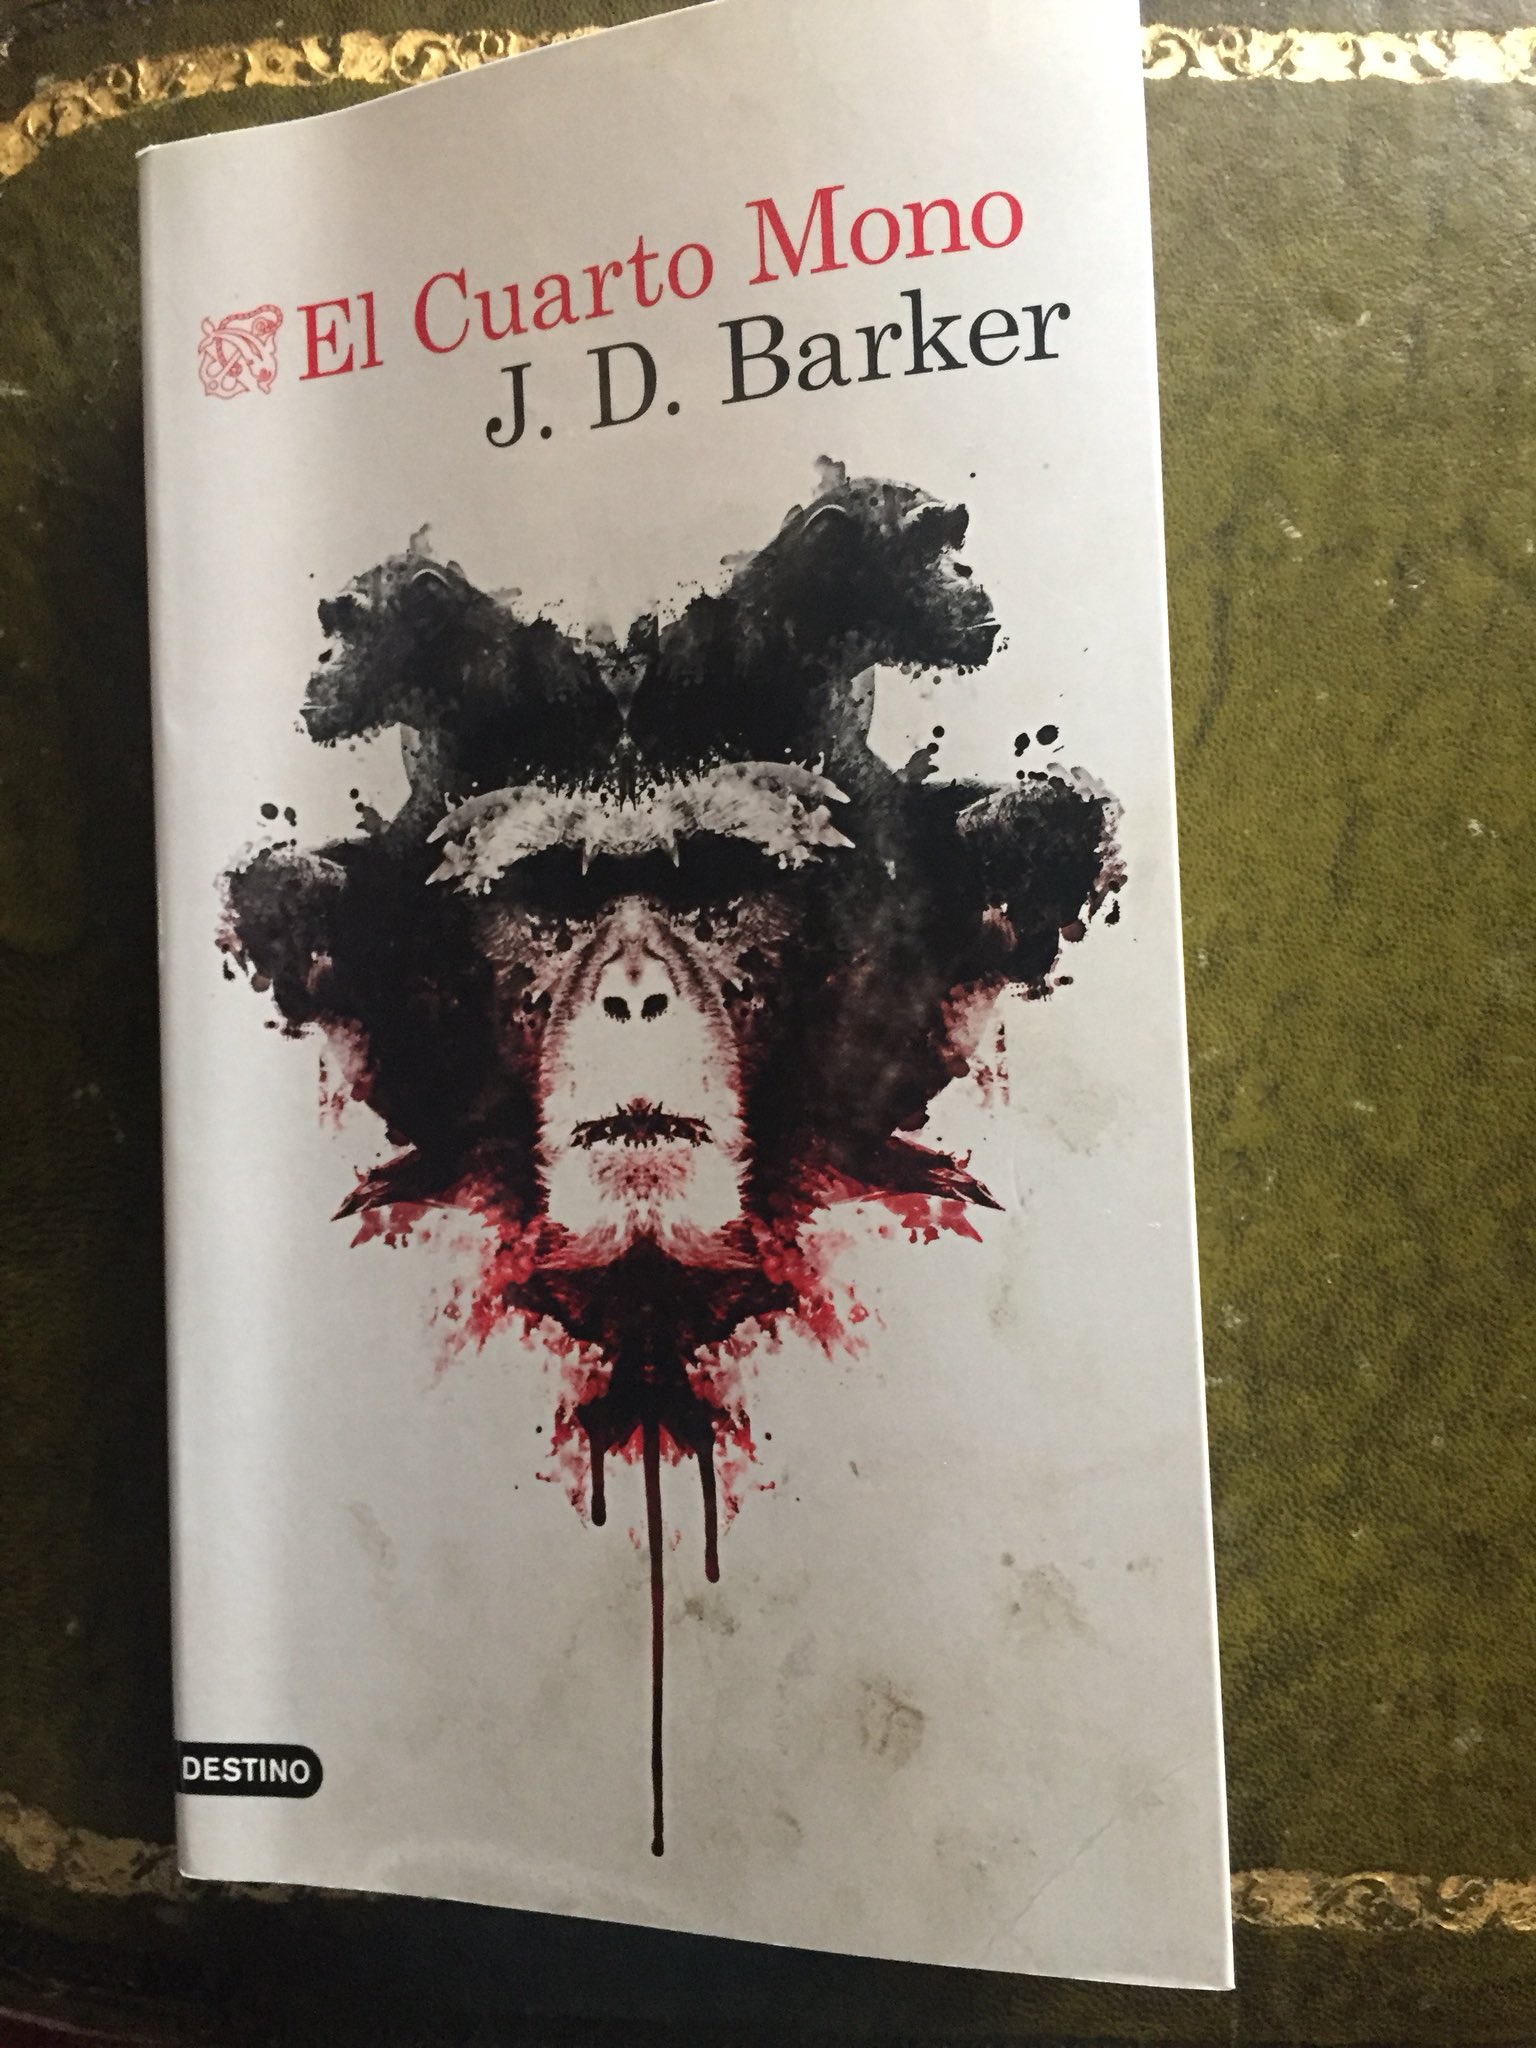 Juan Infante on X: #leoycomparto El Cuarto Mono de J.D. Barker ( Destino)  Thriller “negro” sobre un asesino en serie en Chicago. Una trama trepidante  en busca del asesino. Entretenida para los